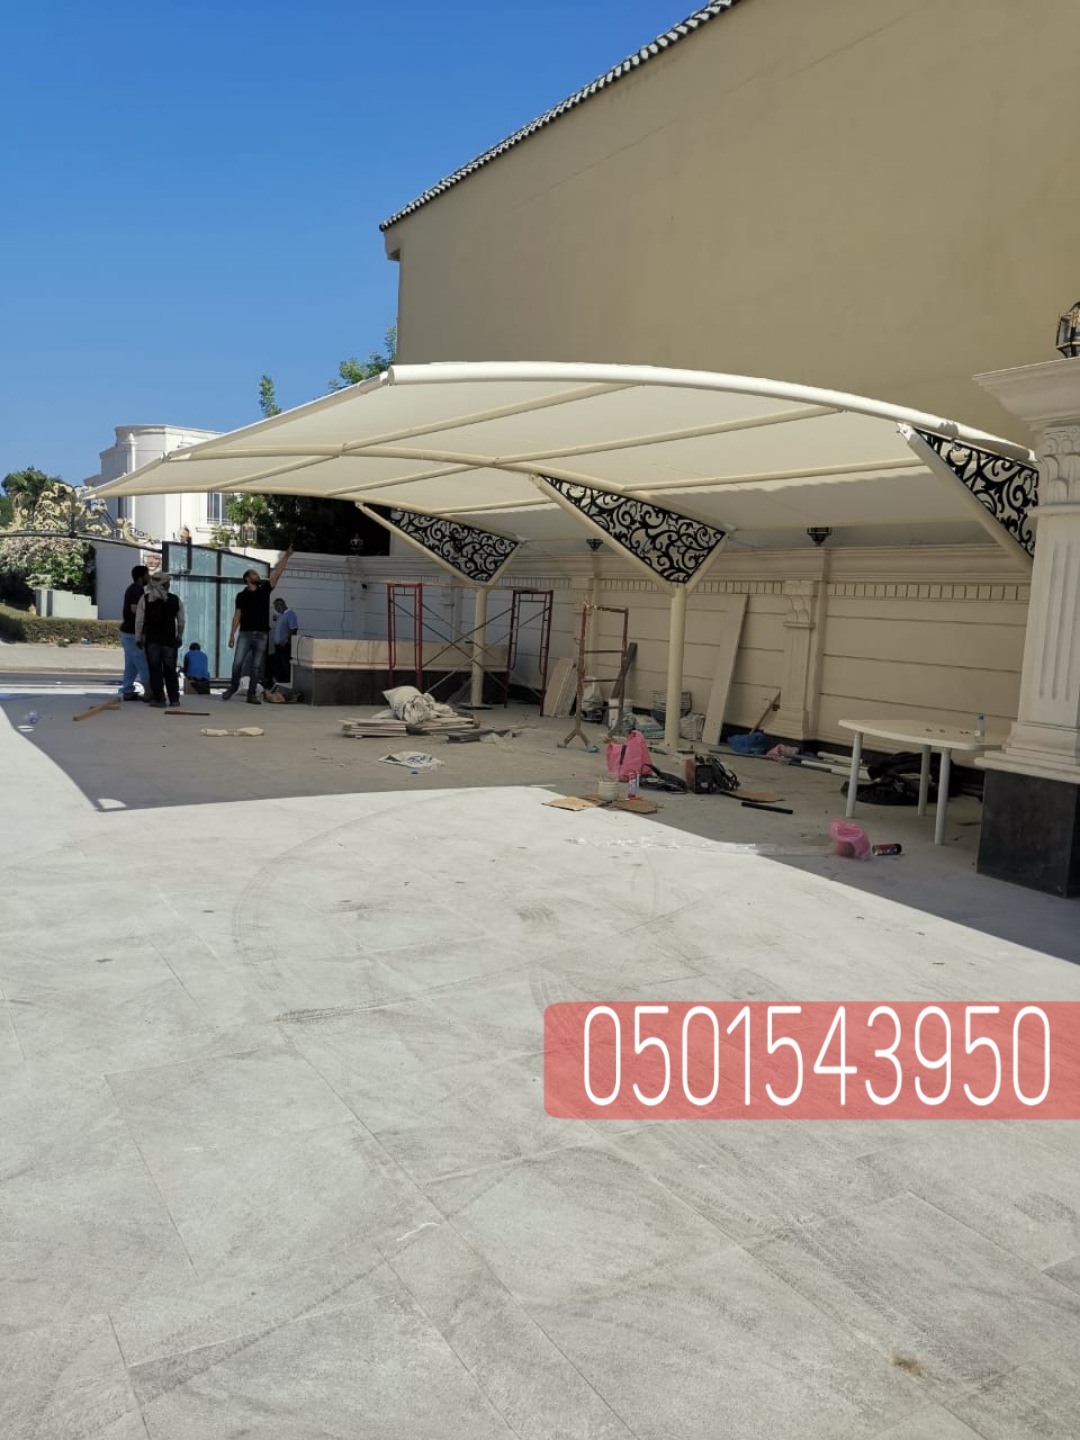 انواع مظلات السيارات في الرياض , 0501543950 P_2360hk5l91